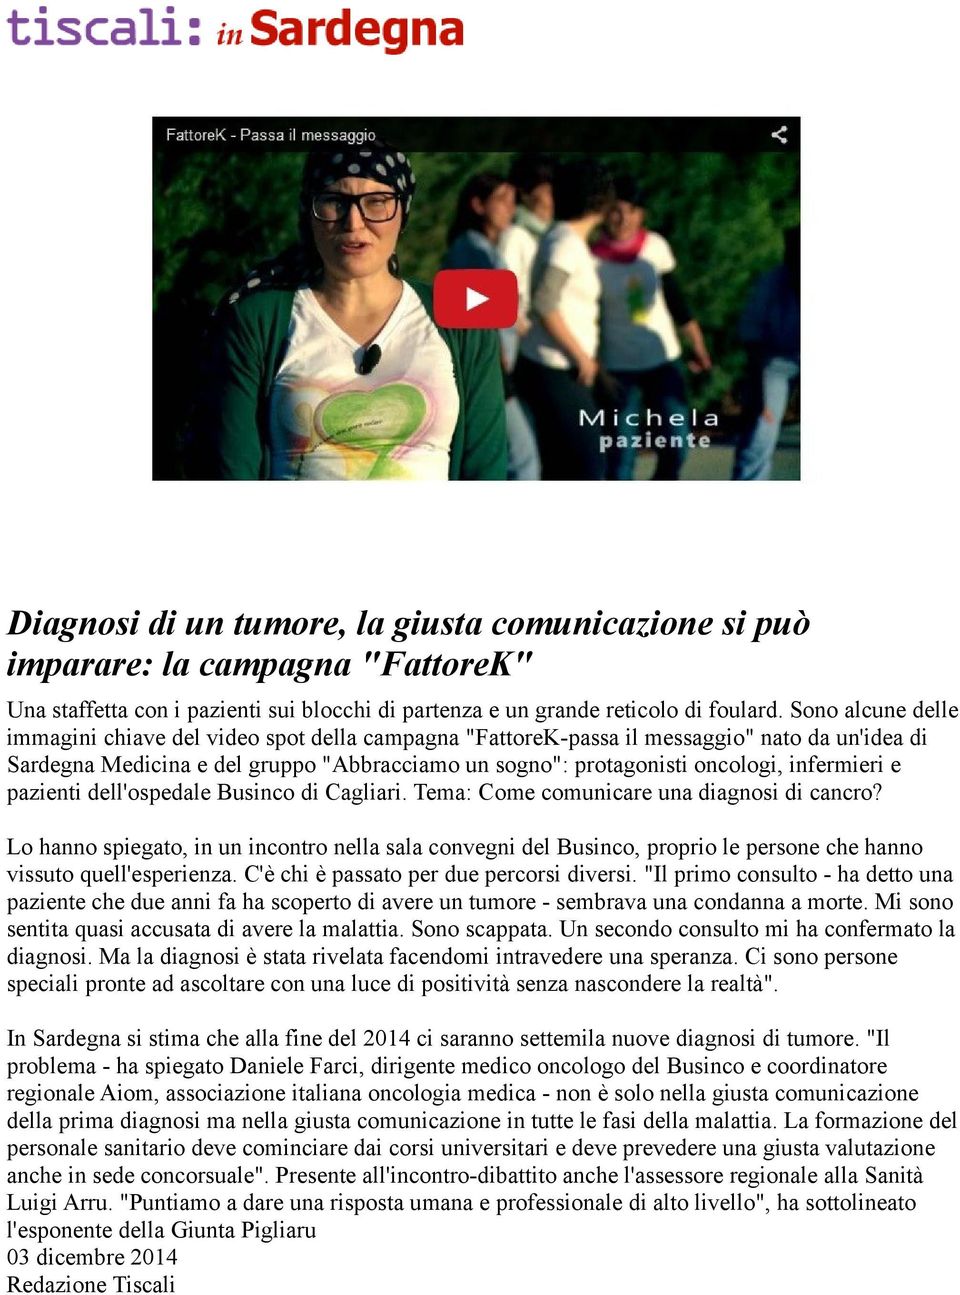 infermieri e pazienti dell'ospedale Businco di Cagliari. Tema: Come comunicare una diagnosi di cancro?